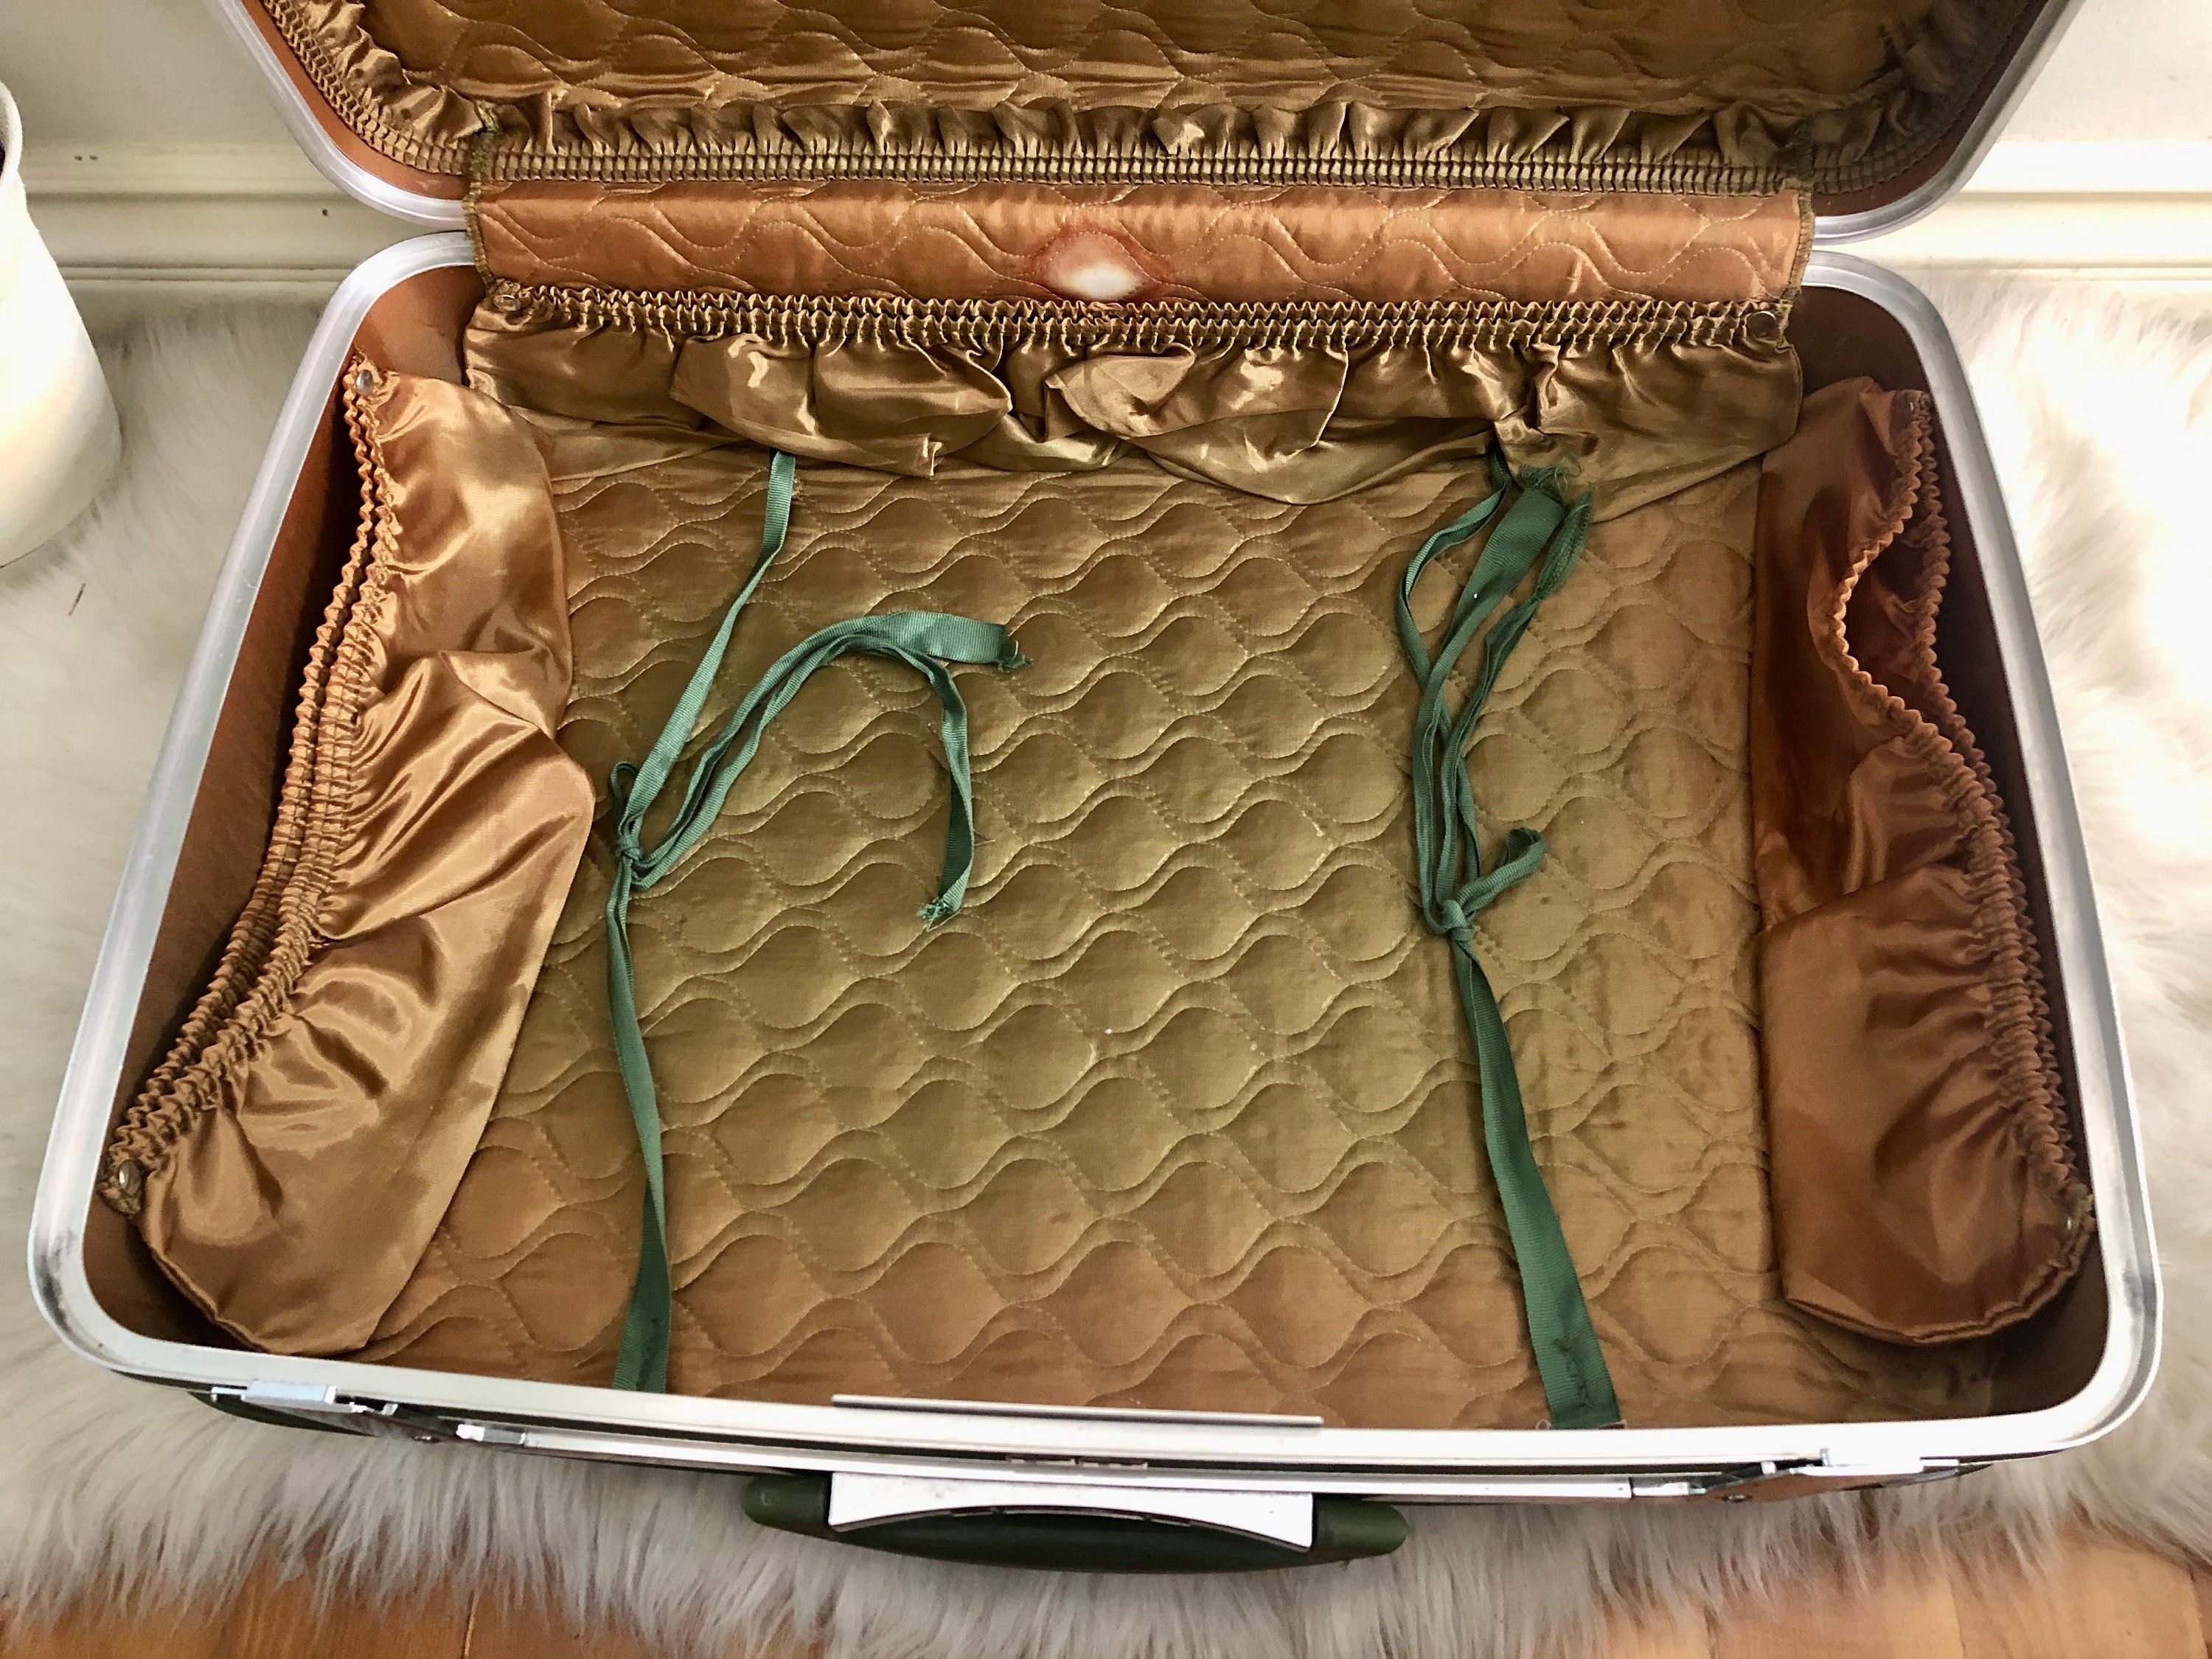 Vintage Travel Smart Olive Suitcase Luggage Train Luggage 